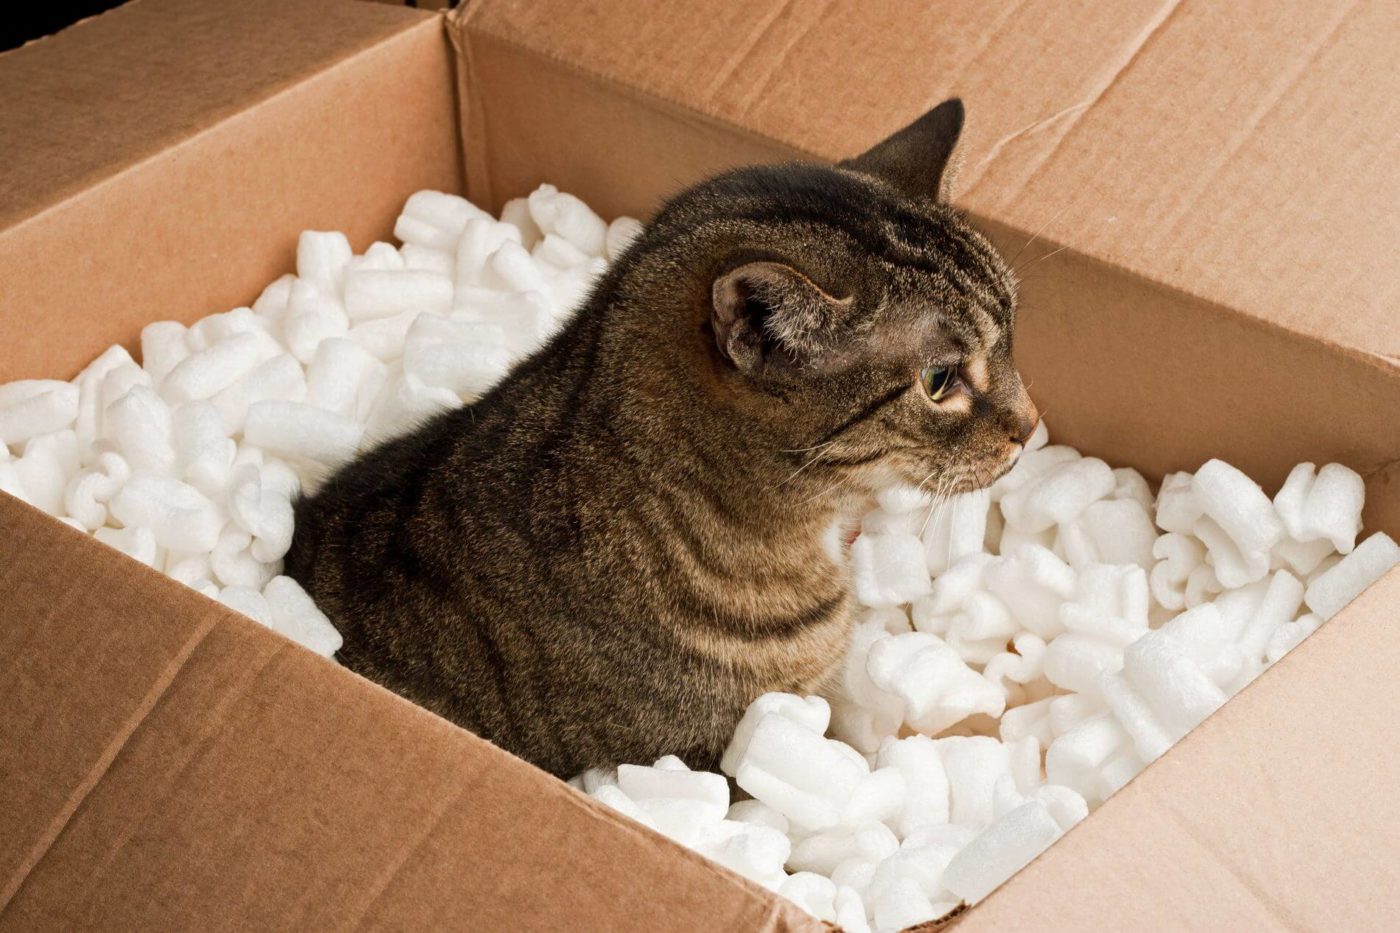 A cat in a box filled with foam peanuts